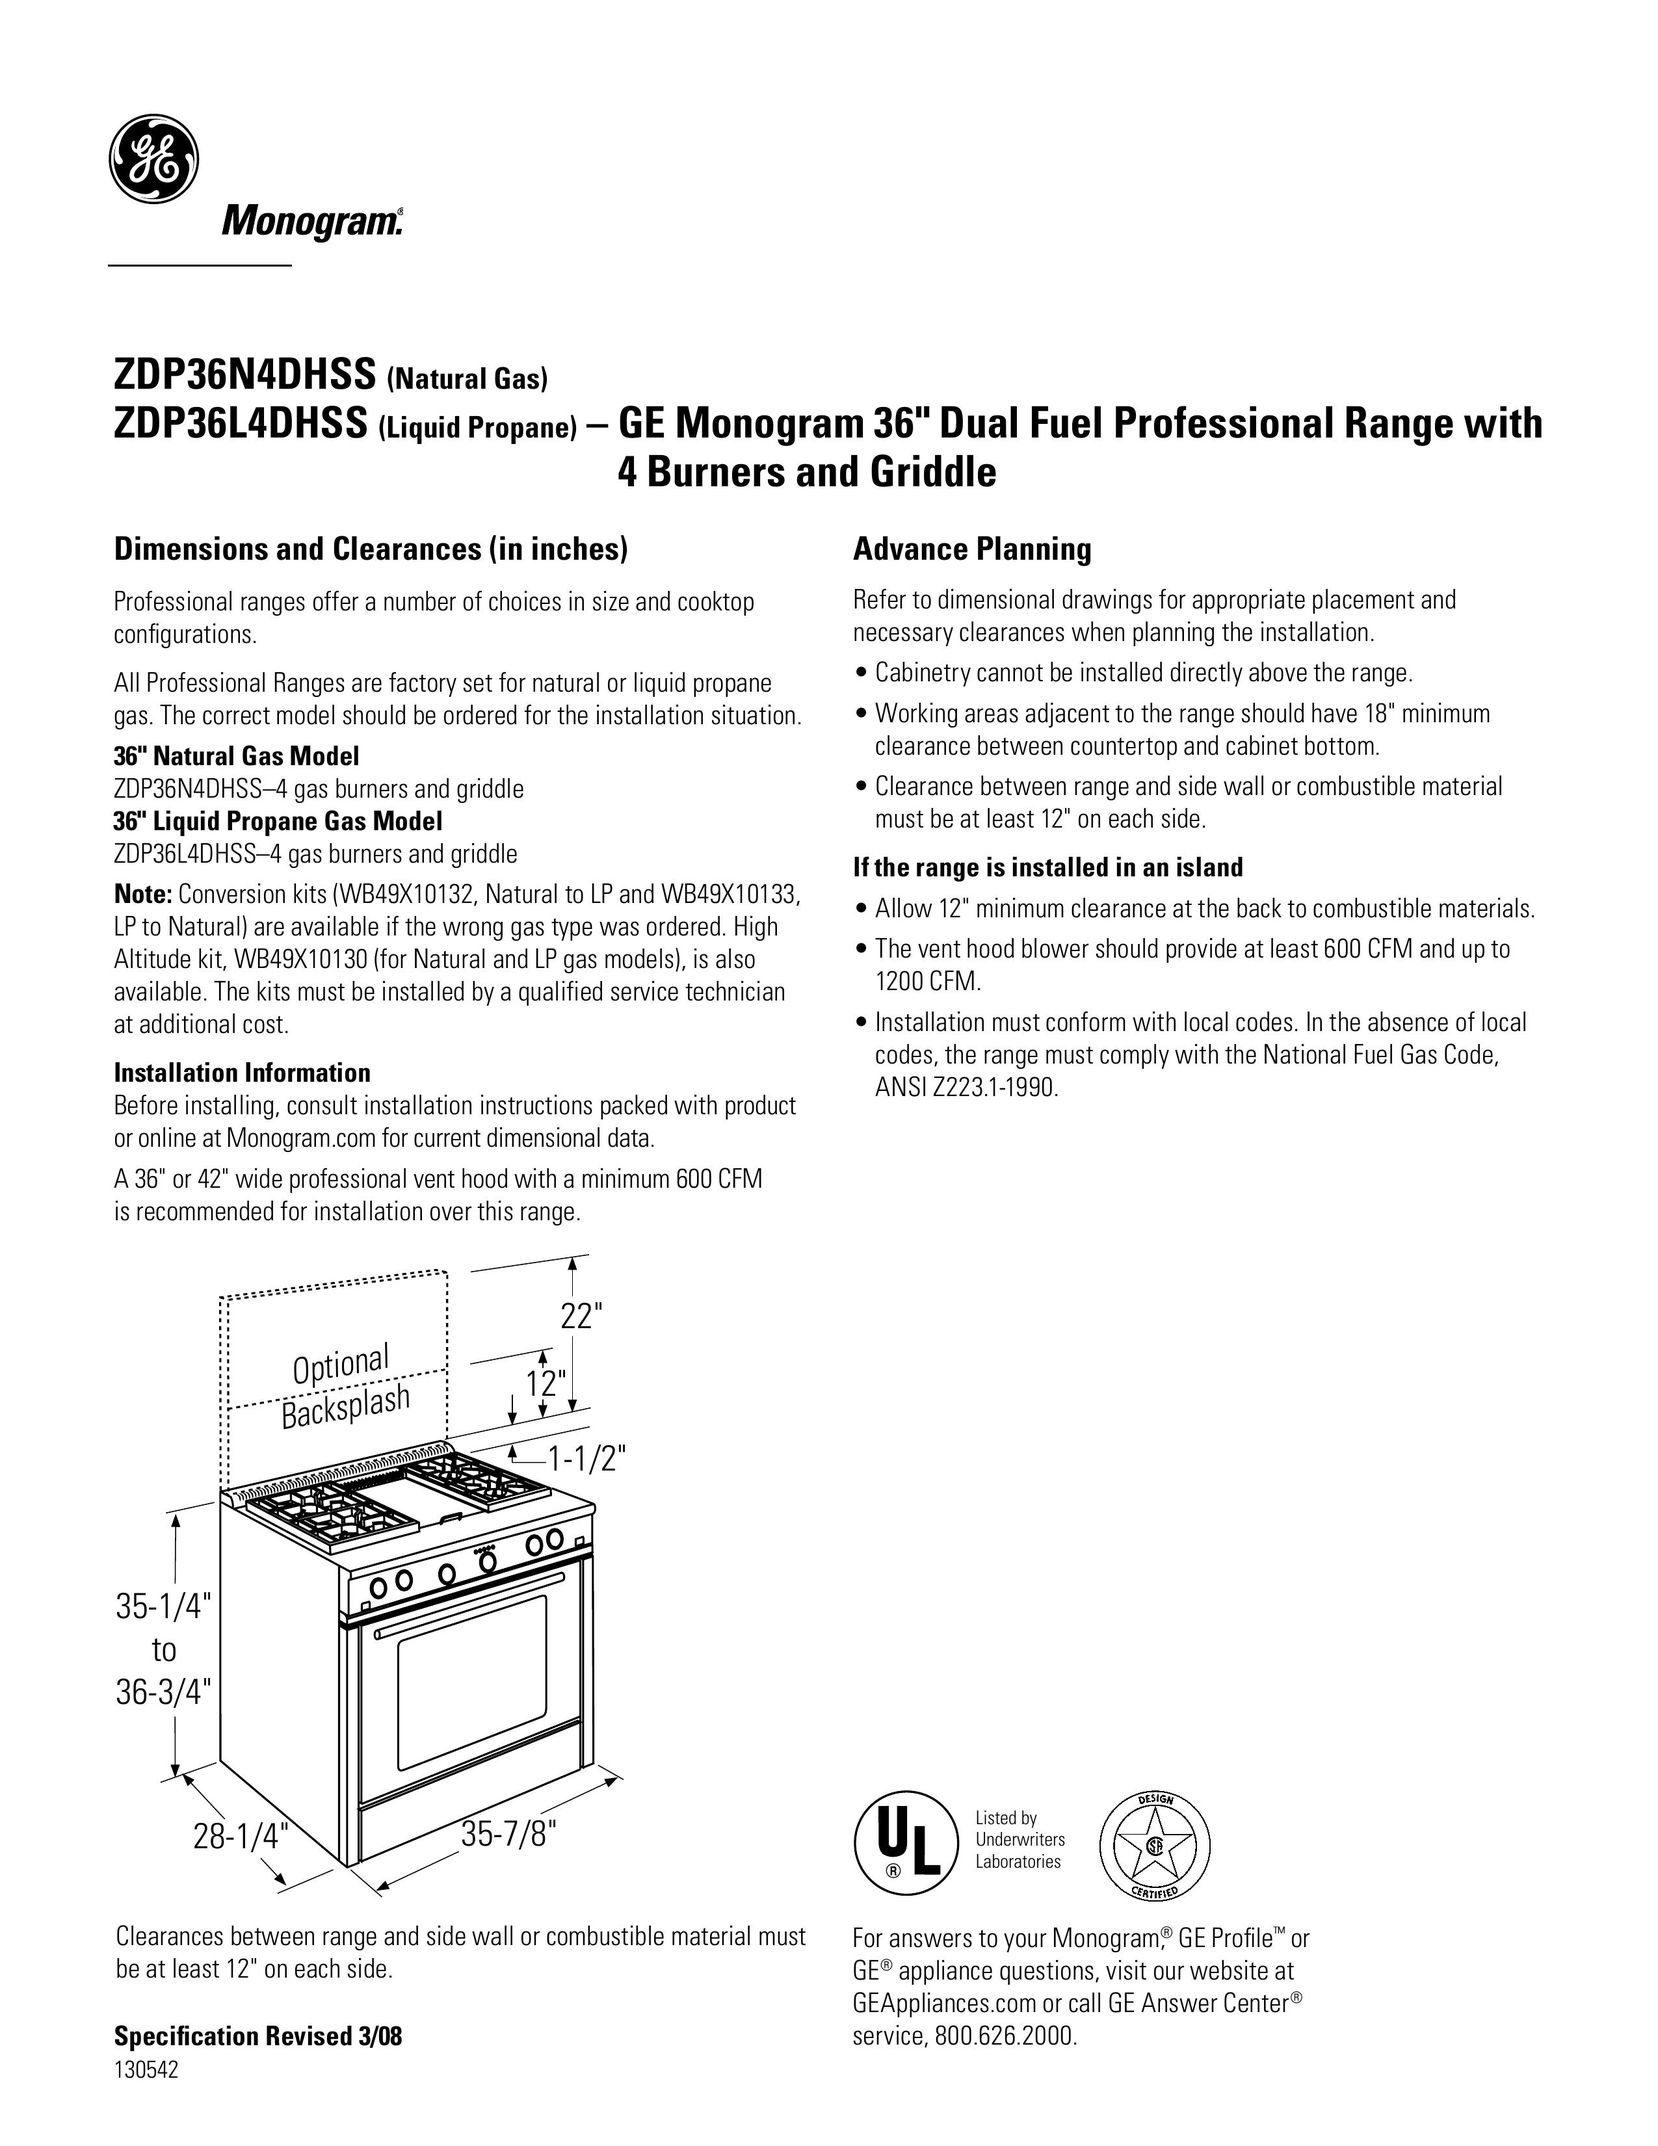 GE Monogram ZDP3614DHSS Range User Manual